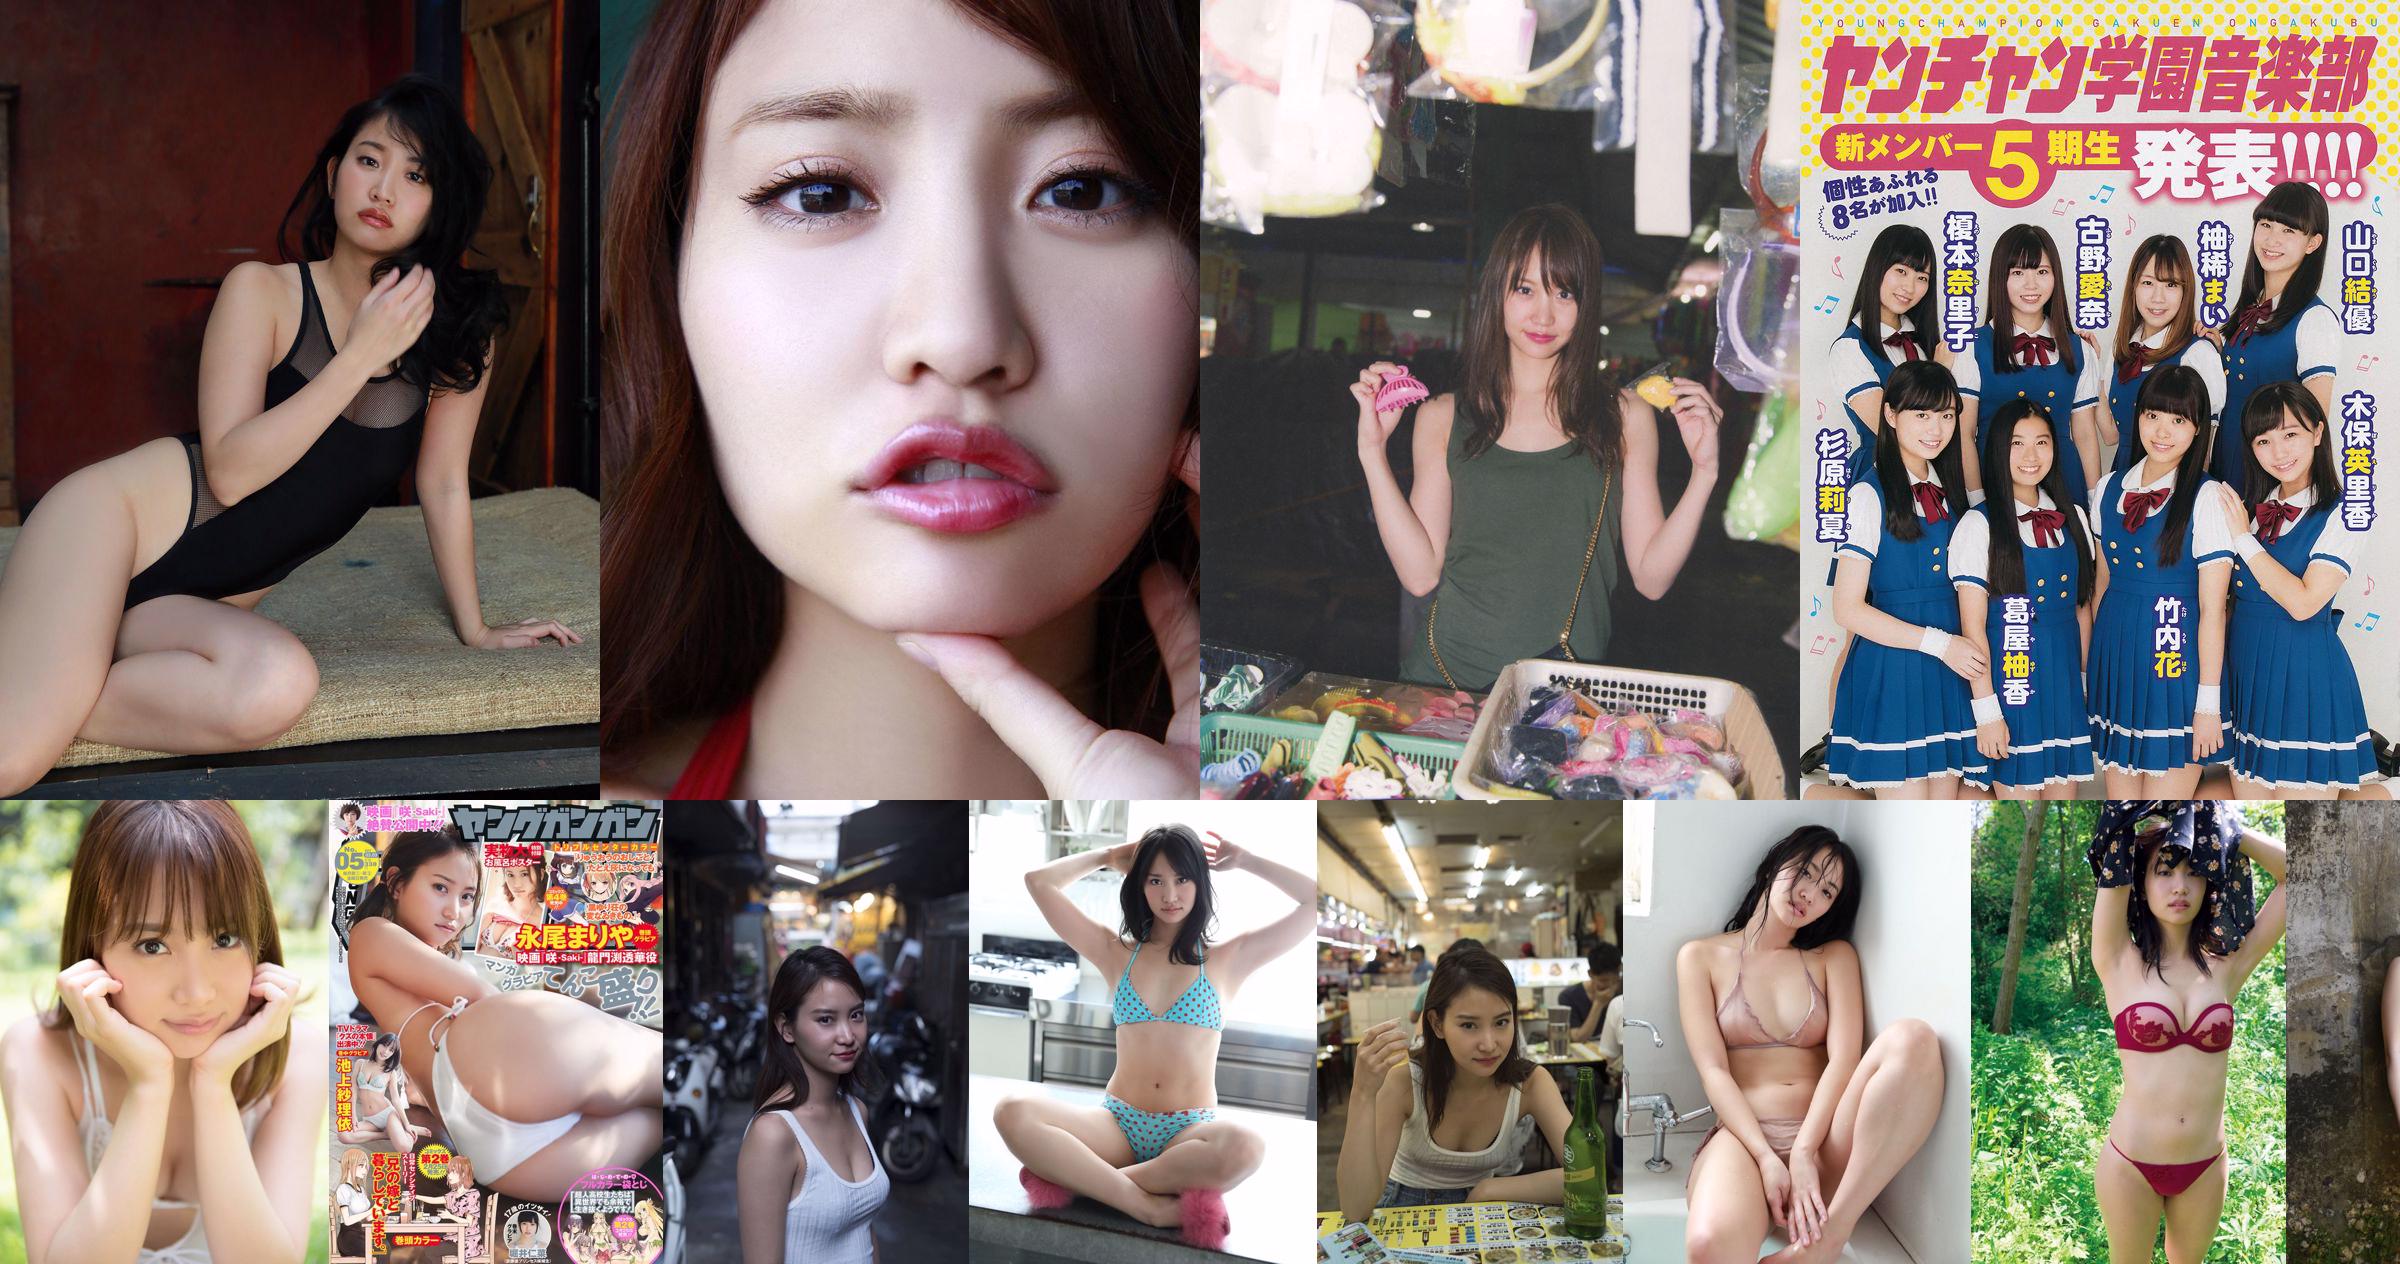 [Young Magazine] Mariya Nagao Chiaki Sano 2015 Fotografia No.07 No.439206 Página 6